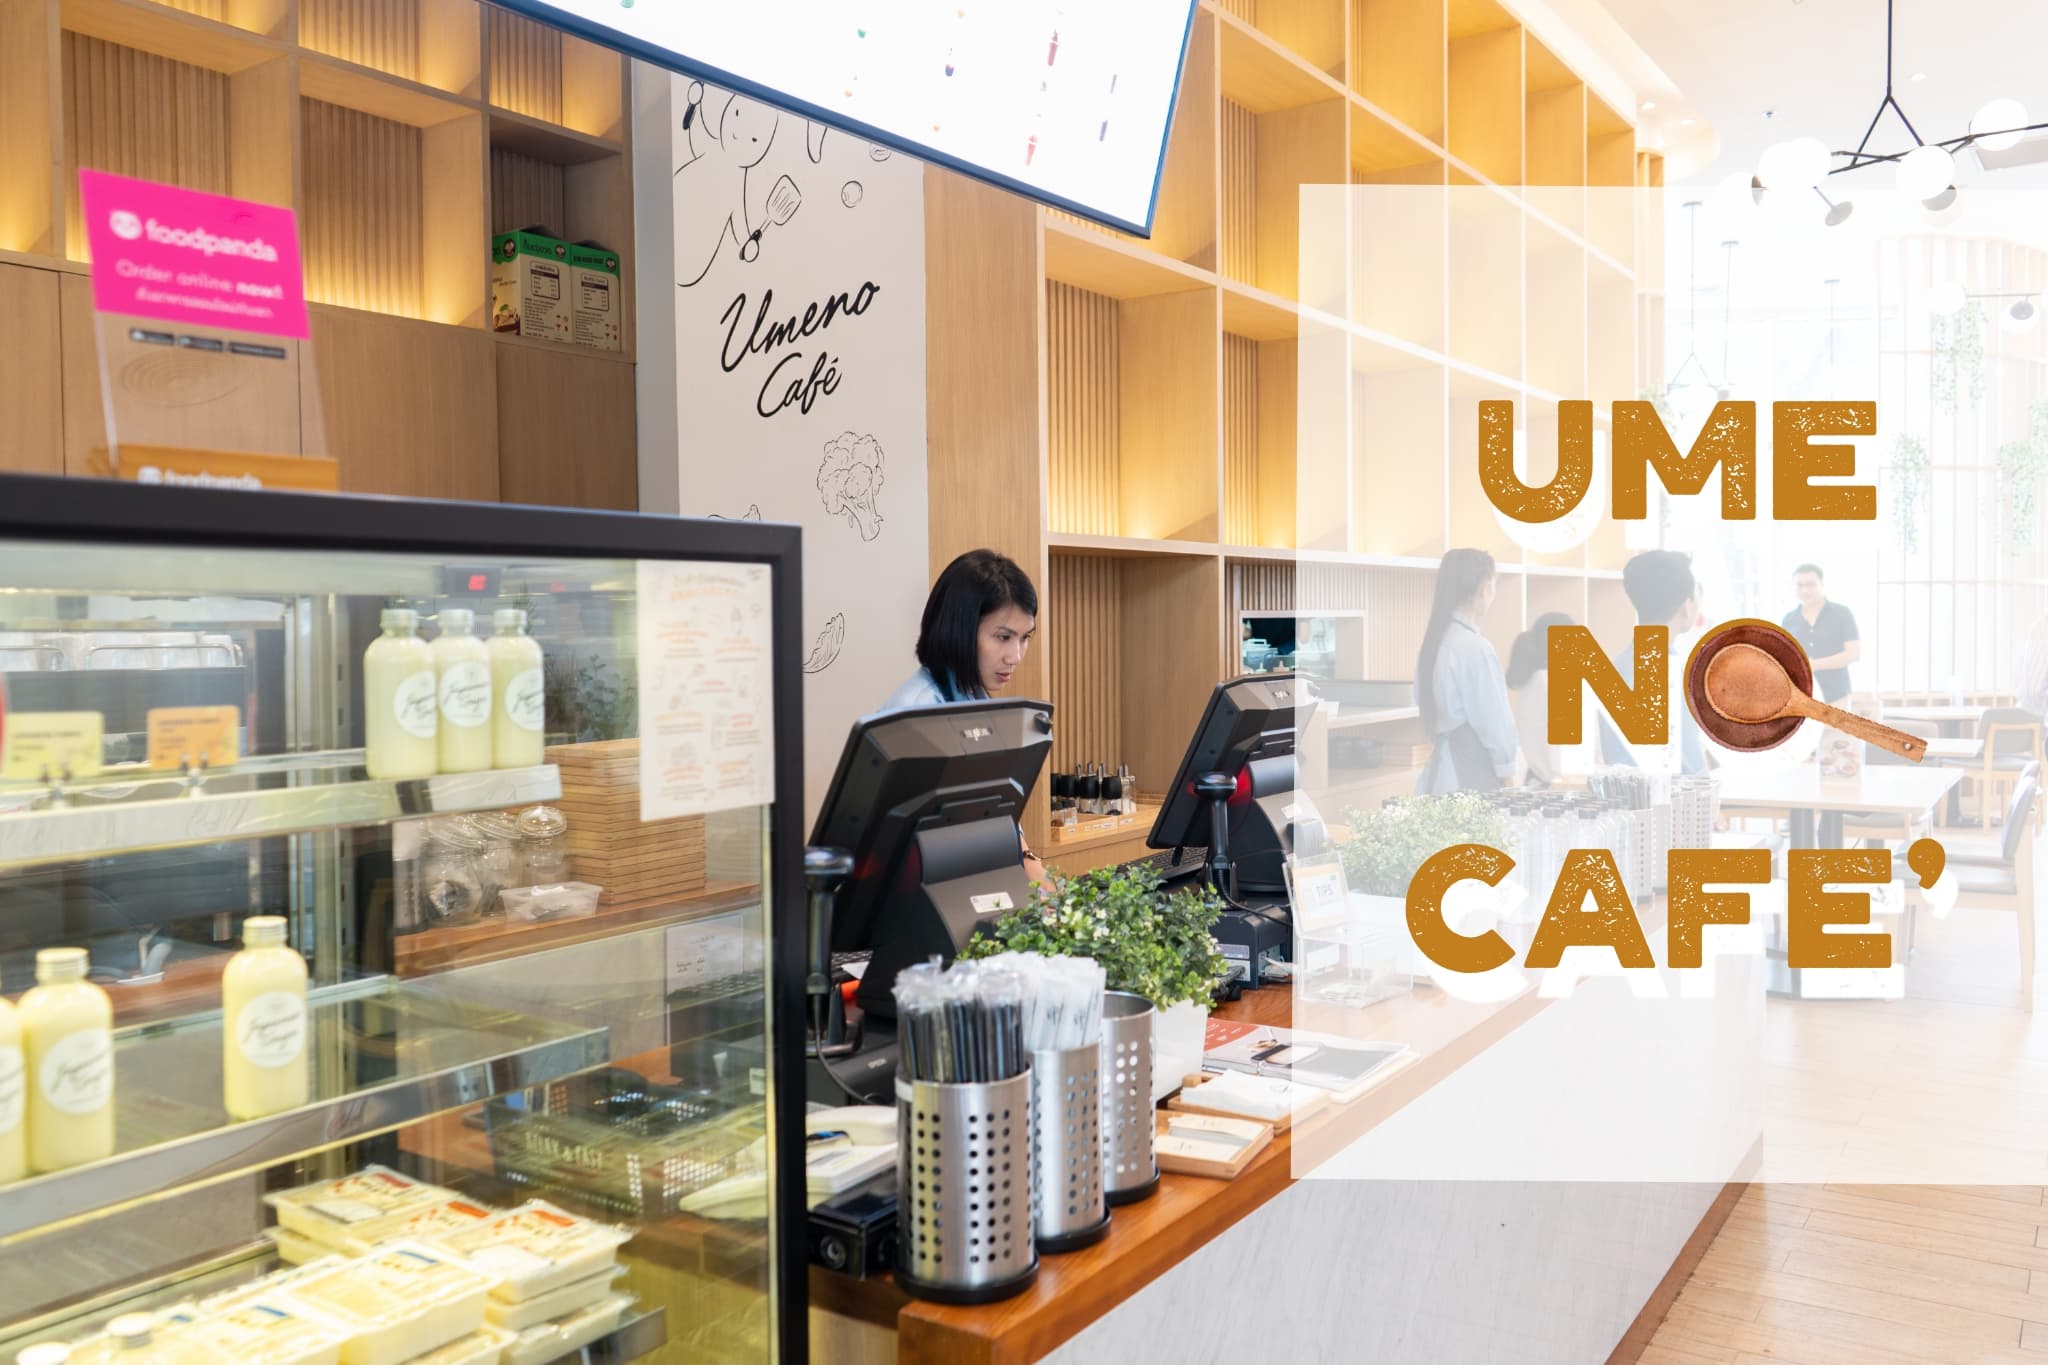 Umeno Cafe' คาเฟ่ญี่ปุ่นสไตล์ อาหารอร่อย ของหวานอร่อยมากกกกก แปลกใหม่ไม่ซ้ำใคร